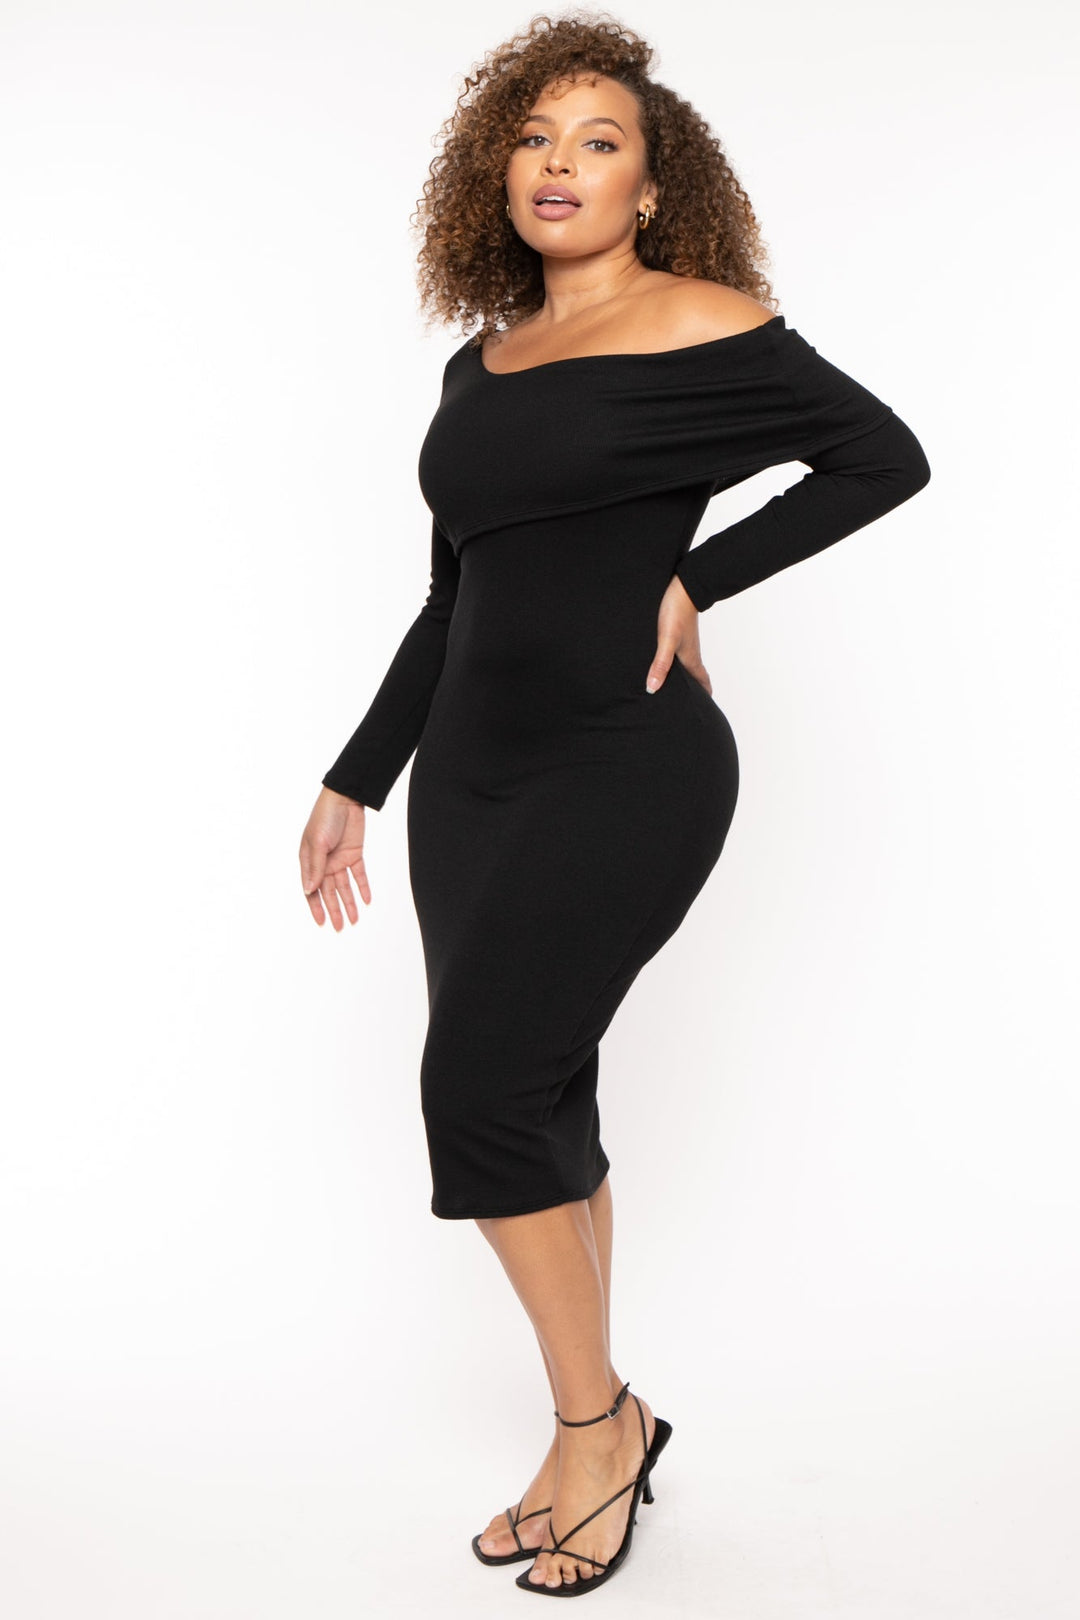 Women's Plus Size Cerise One Shoulder Dress- Black - Curvy Sense